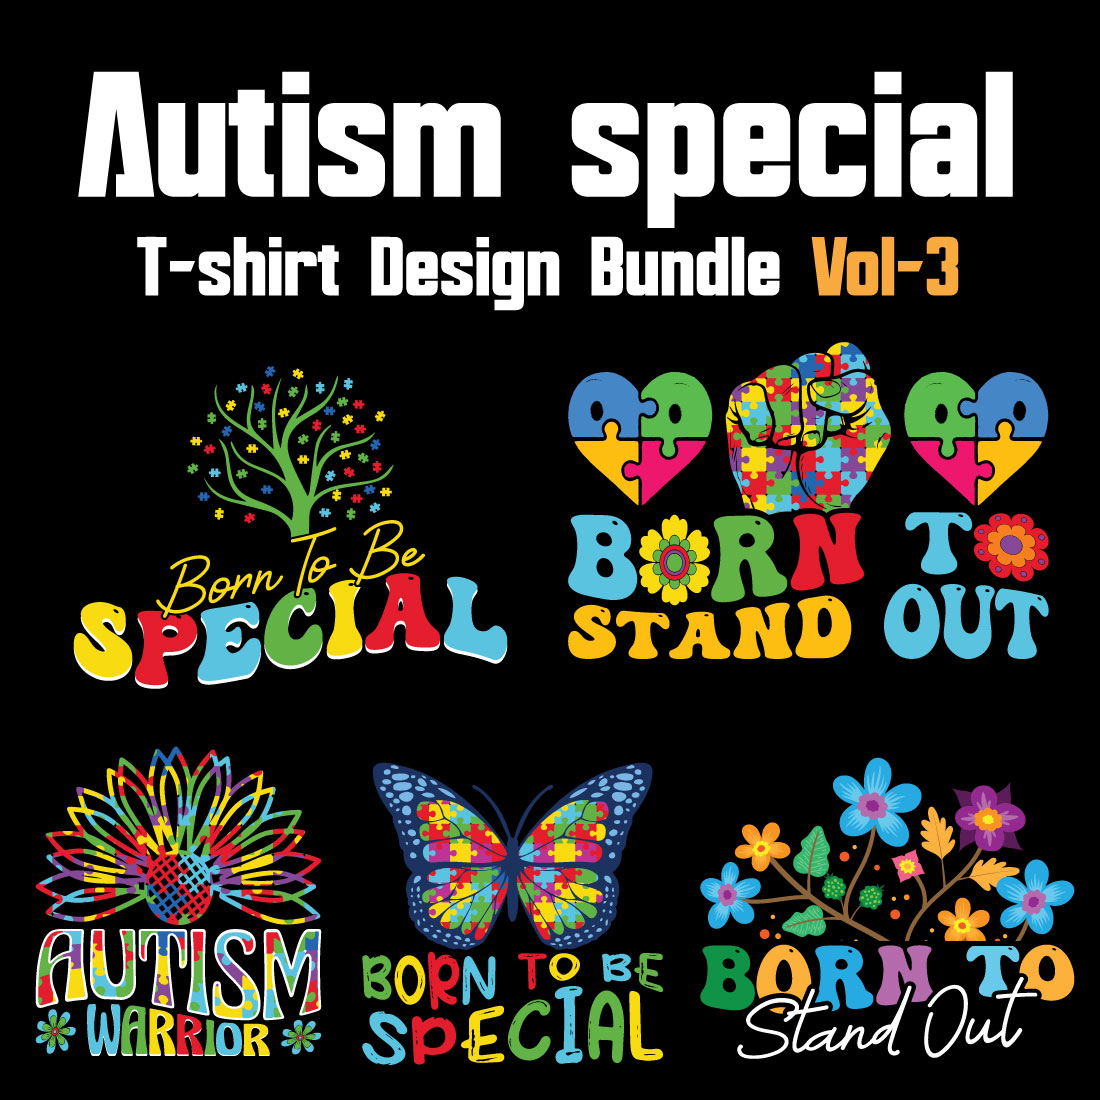 Autism Special T-shirt Design Bundle Vol-3 cover image.